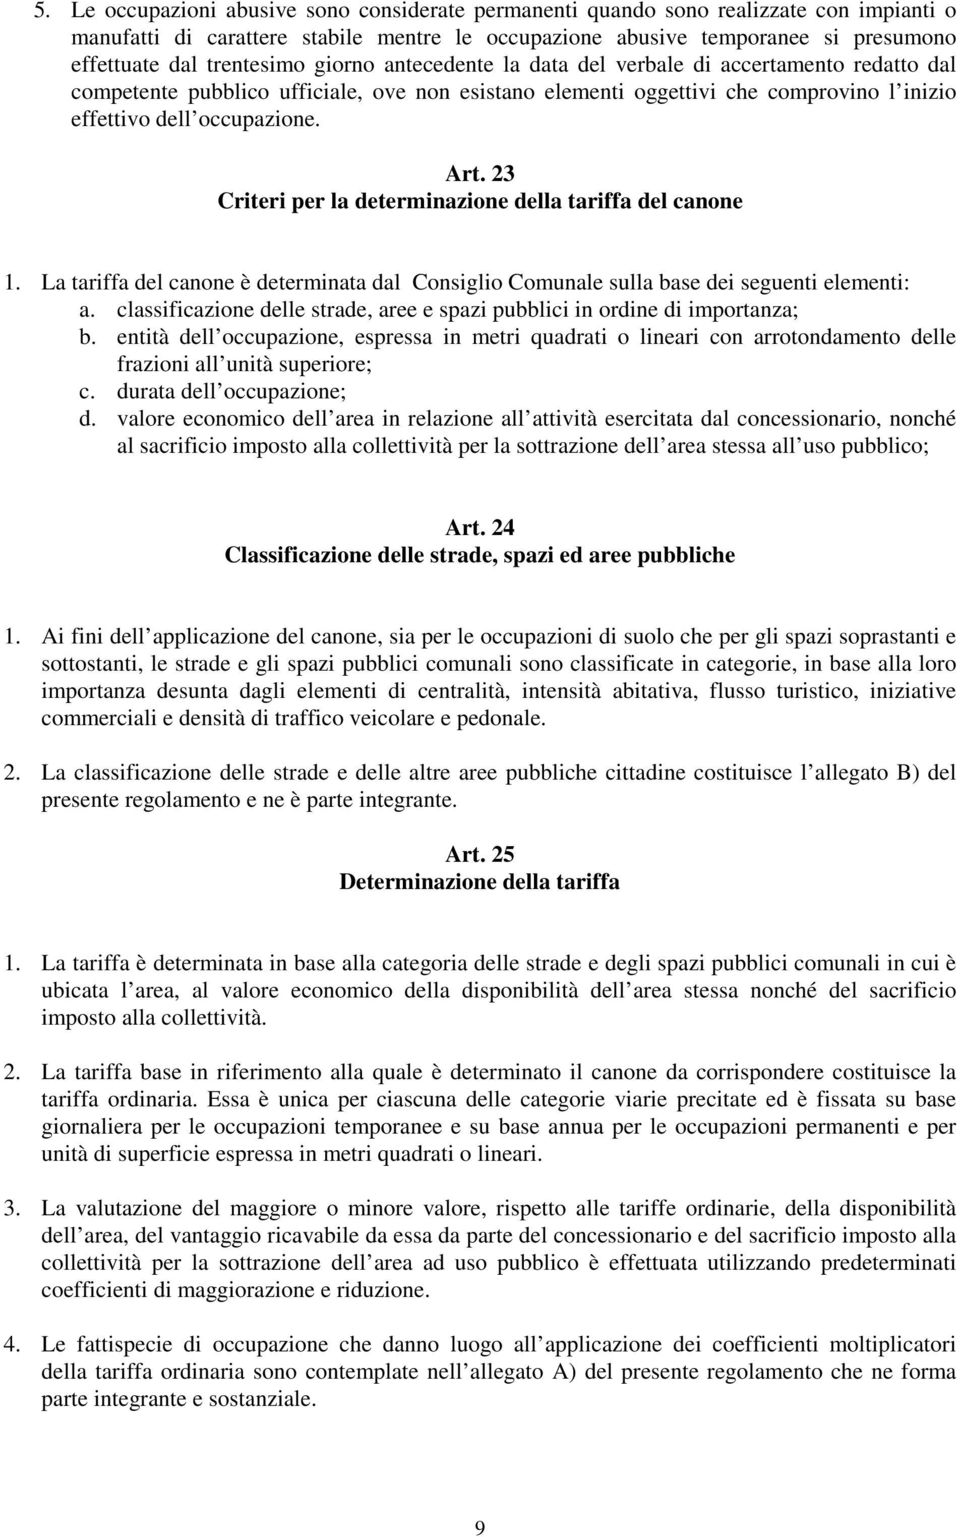 Art. 23 Criteri per la determinazione della tariffa del canone 1. La tariffa del canone è determinata dal Consiglio Comunale sulla base dei seguenti elementi: a.